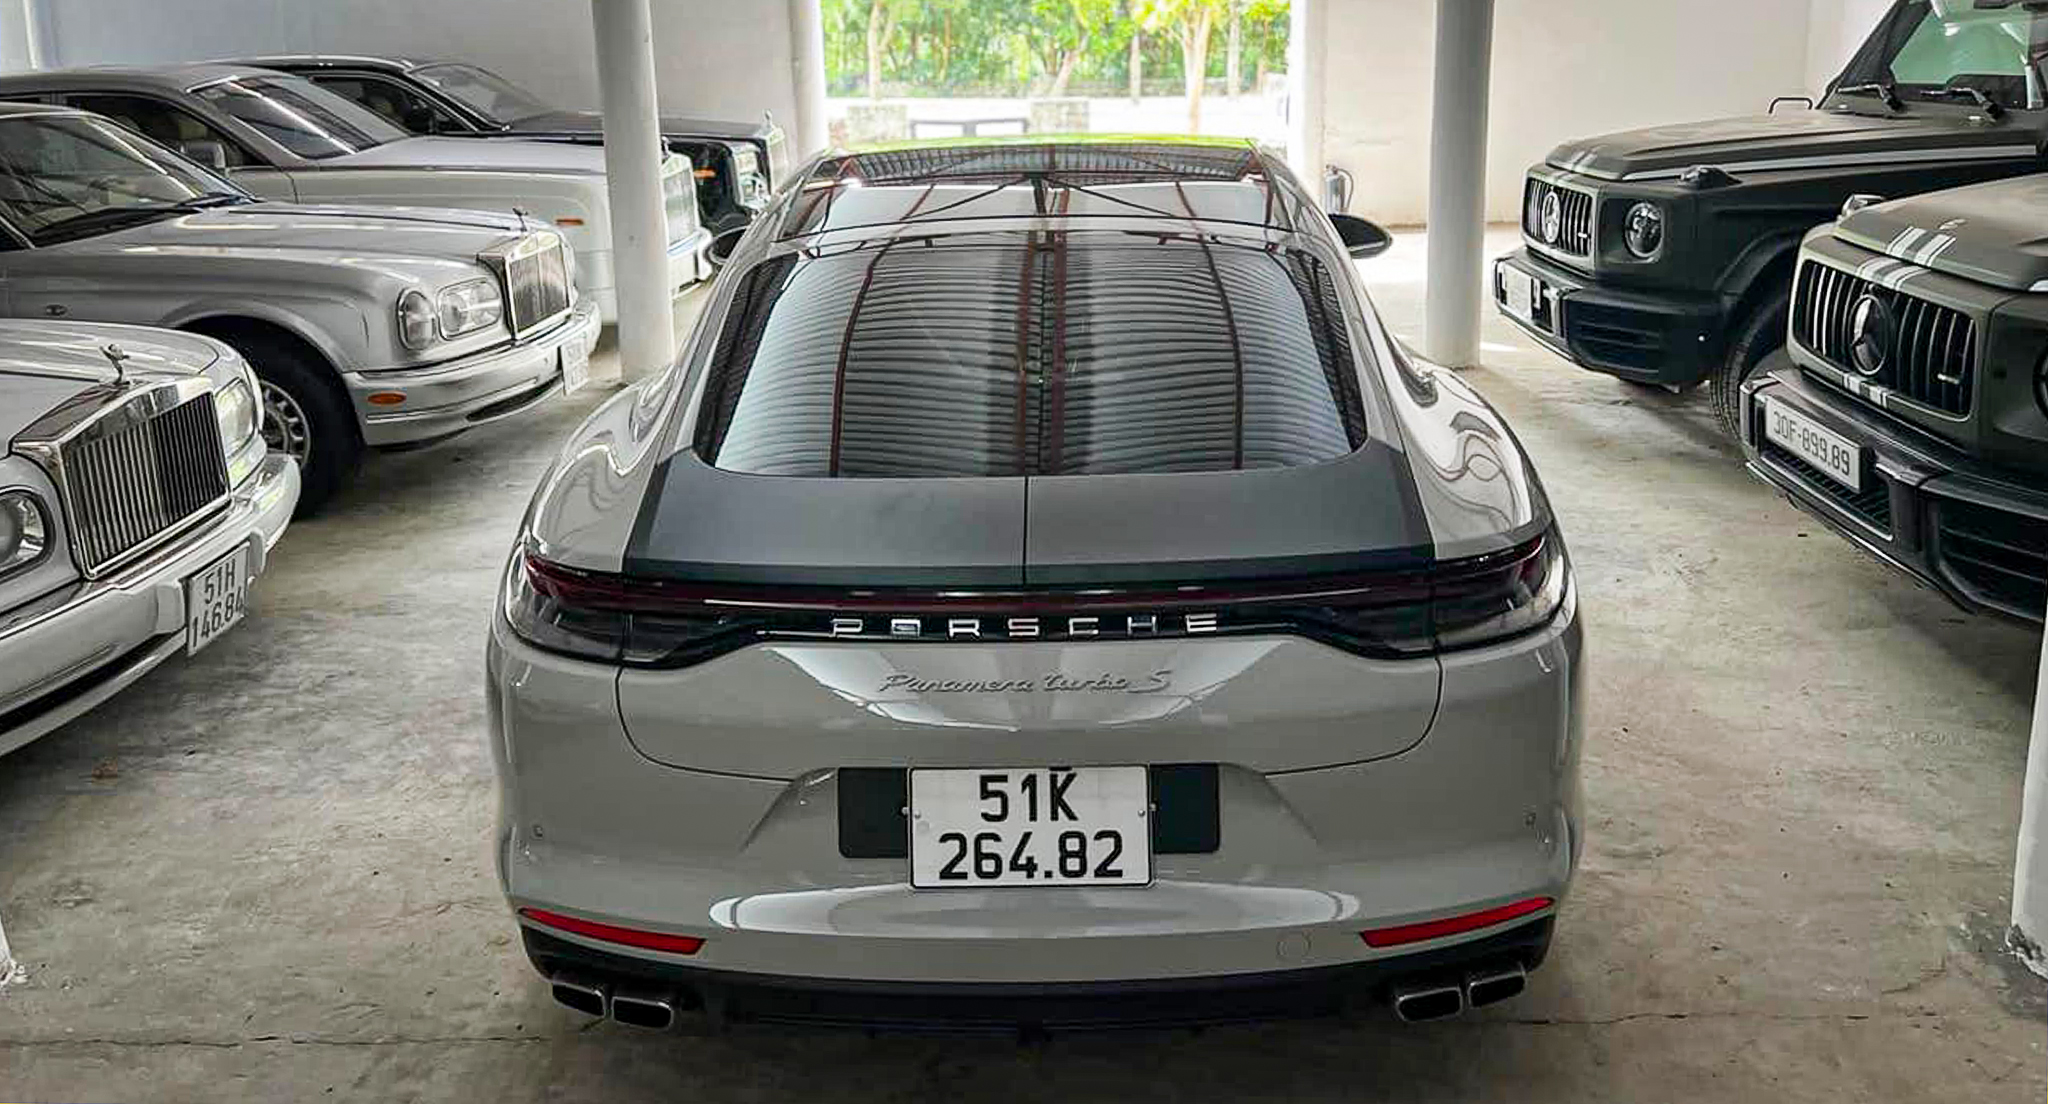 Porsche Panamera Turbo S 2022 độc nhất Việt Nam về tay ông Đặng Lê Nguyên Vũ